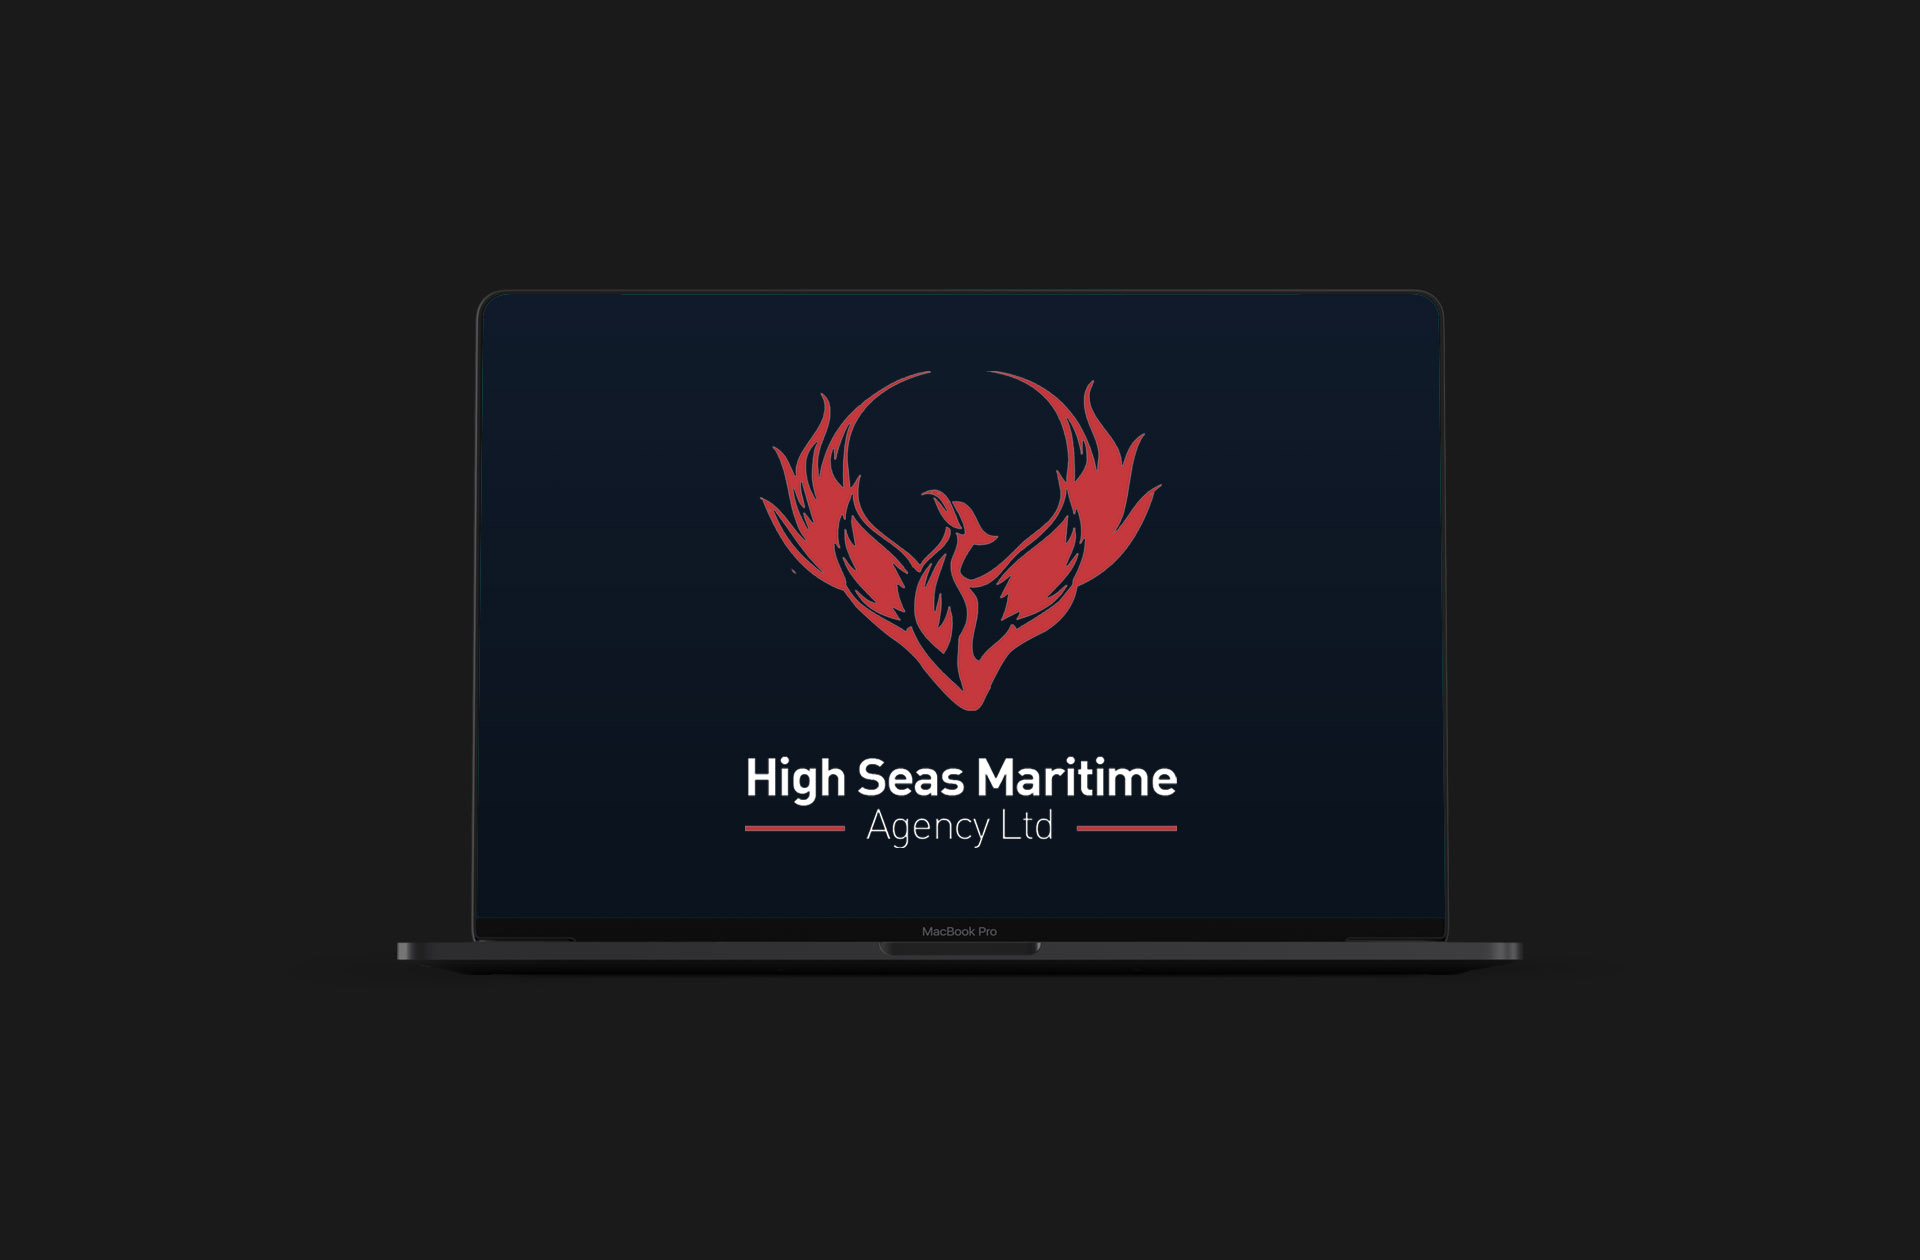 High Seas Maritime